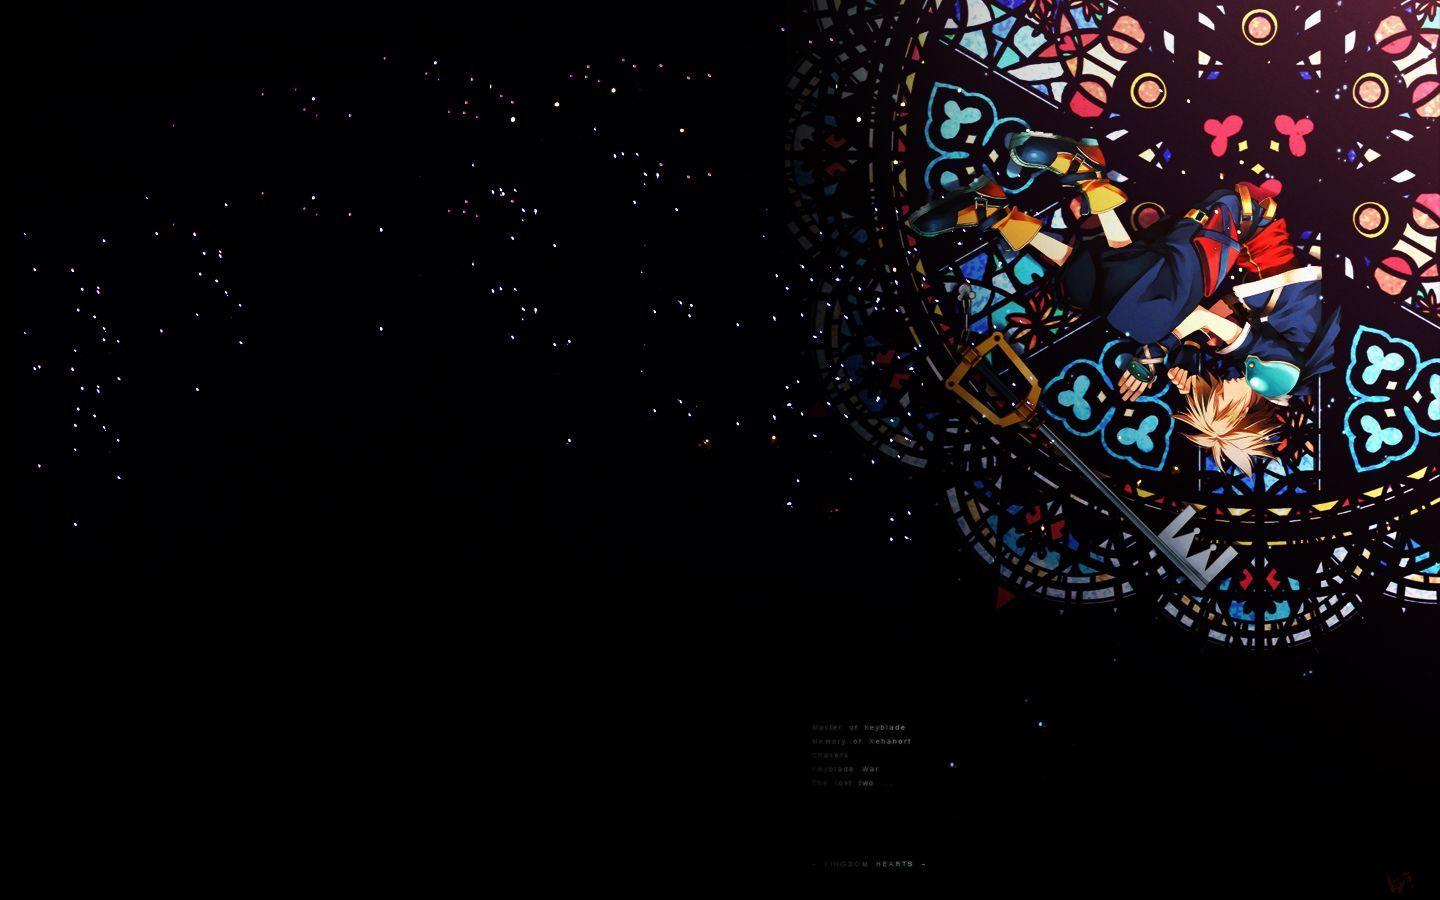 Kingdom Hearts Sora Wallpaper HD For Desktop Wallpaper 1440 x 900 px